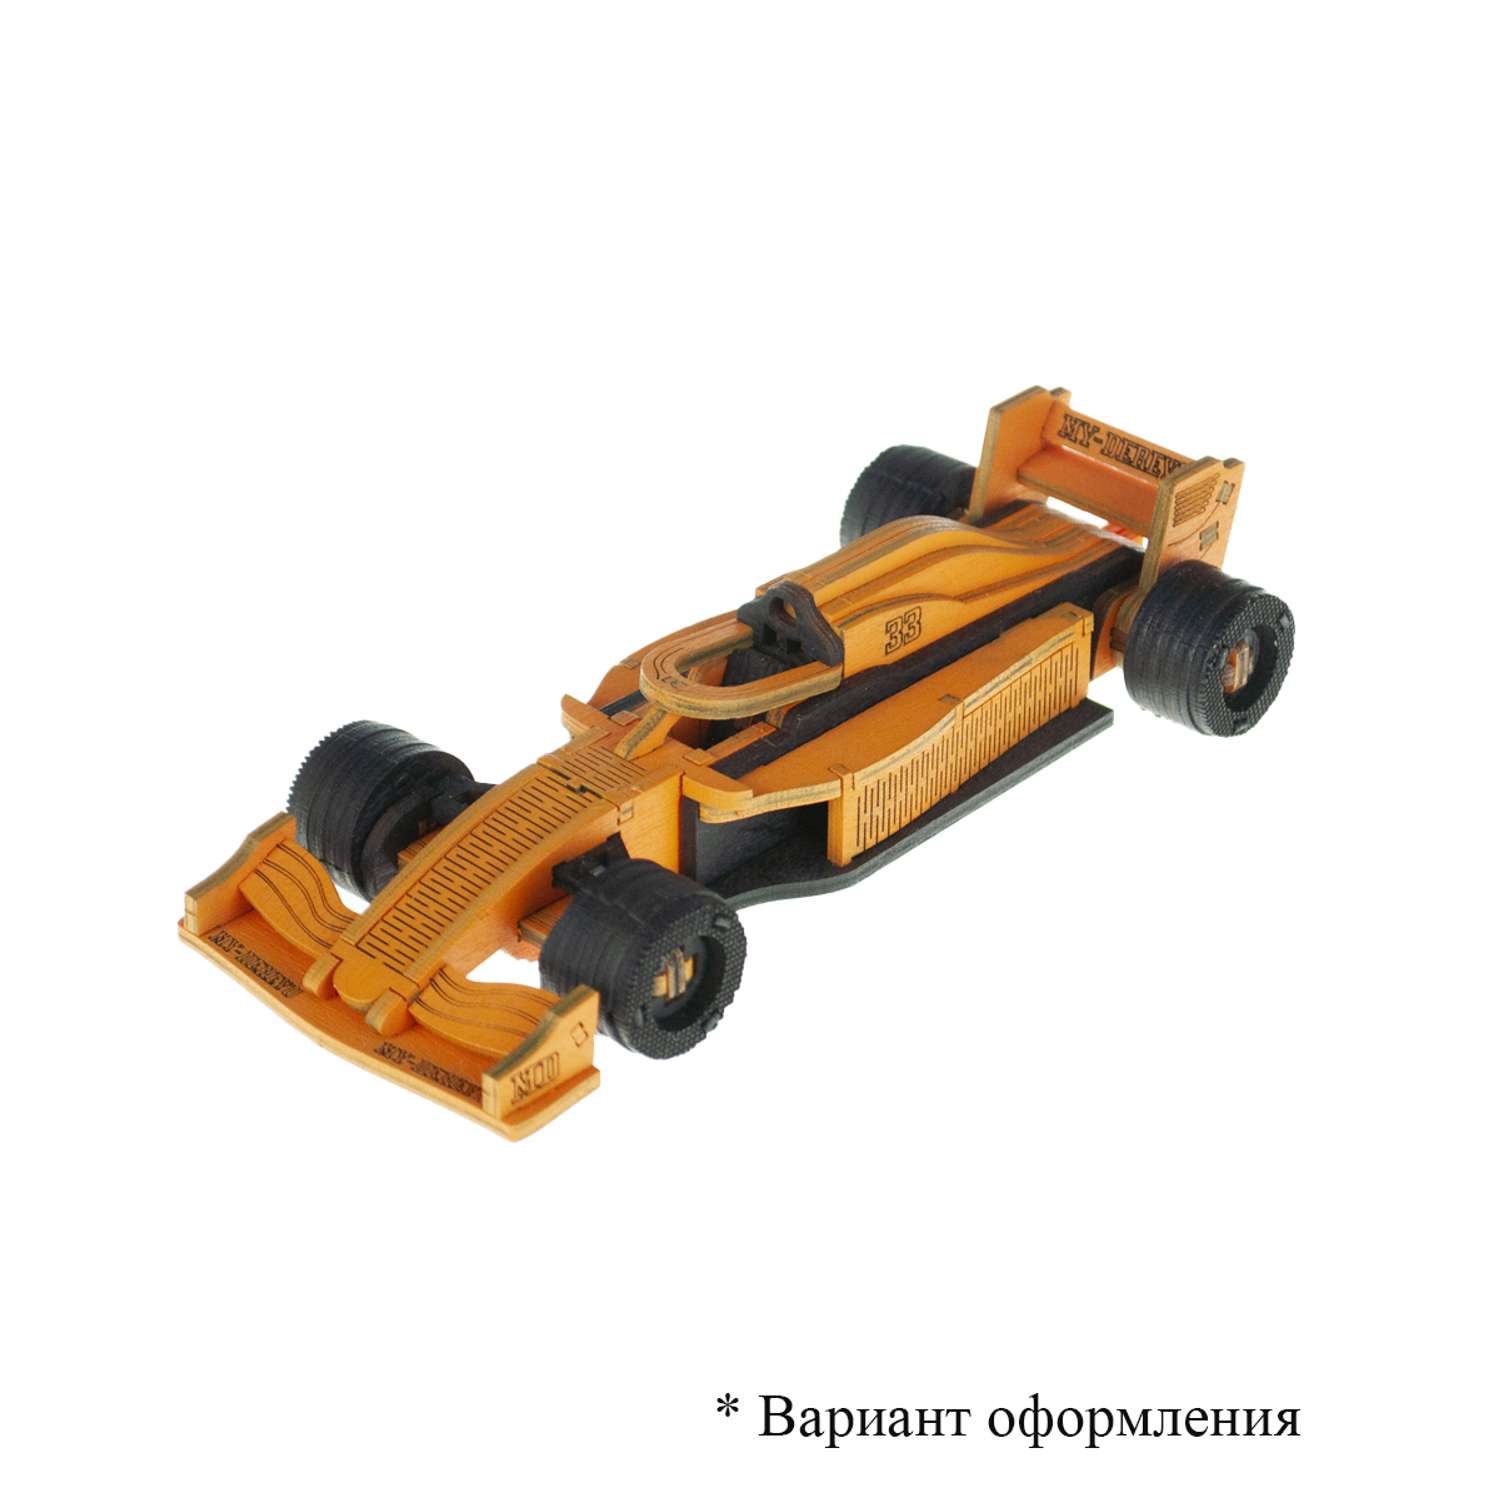 Сборная модель My_derevo конструктор машин Формула - фото 5